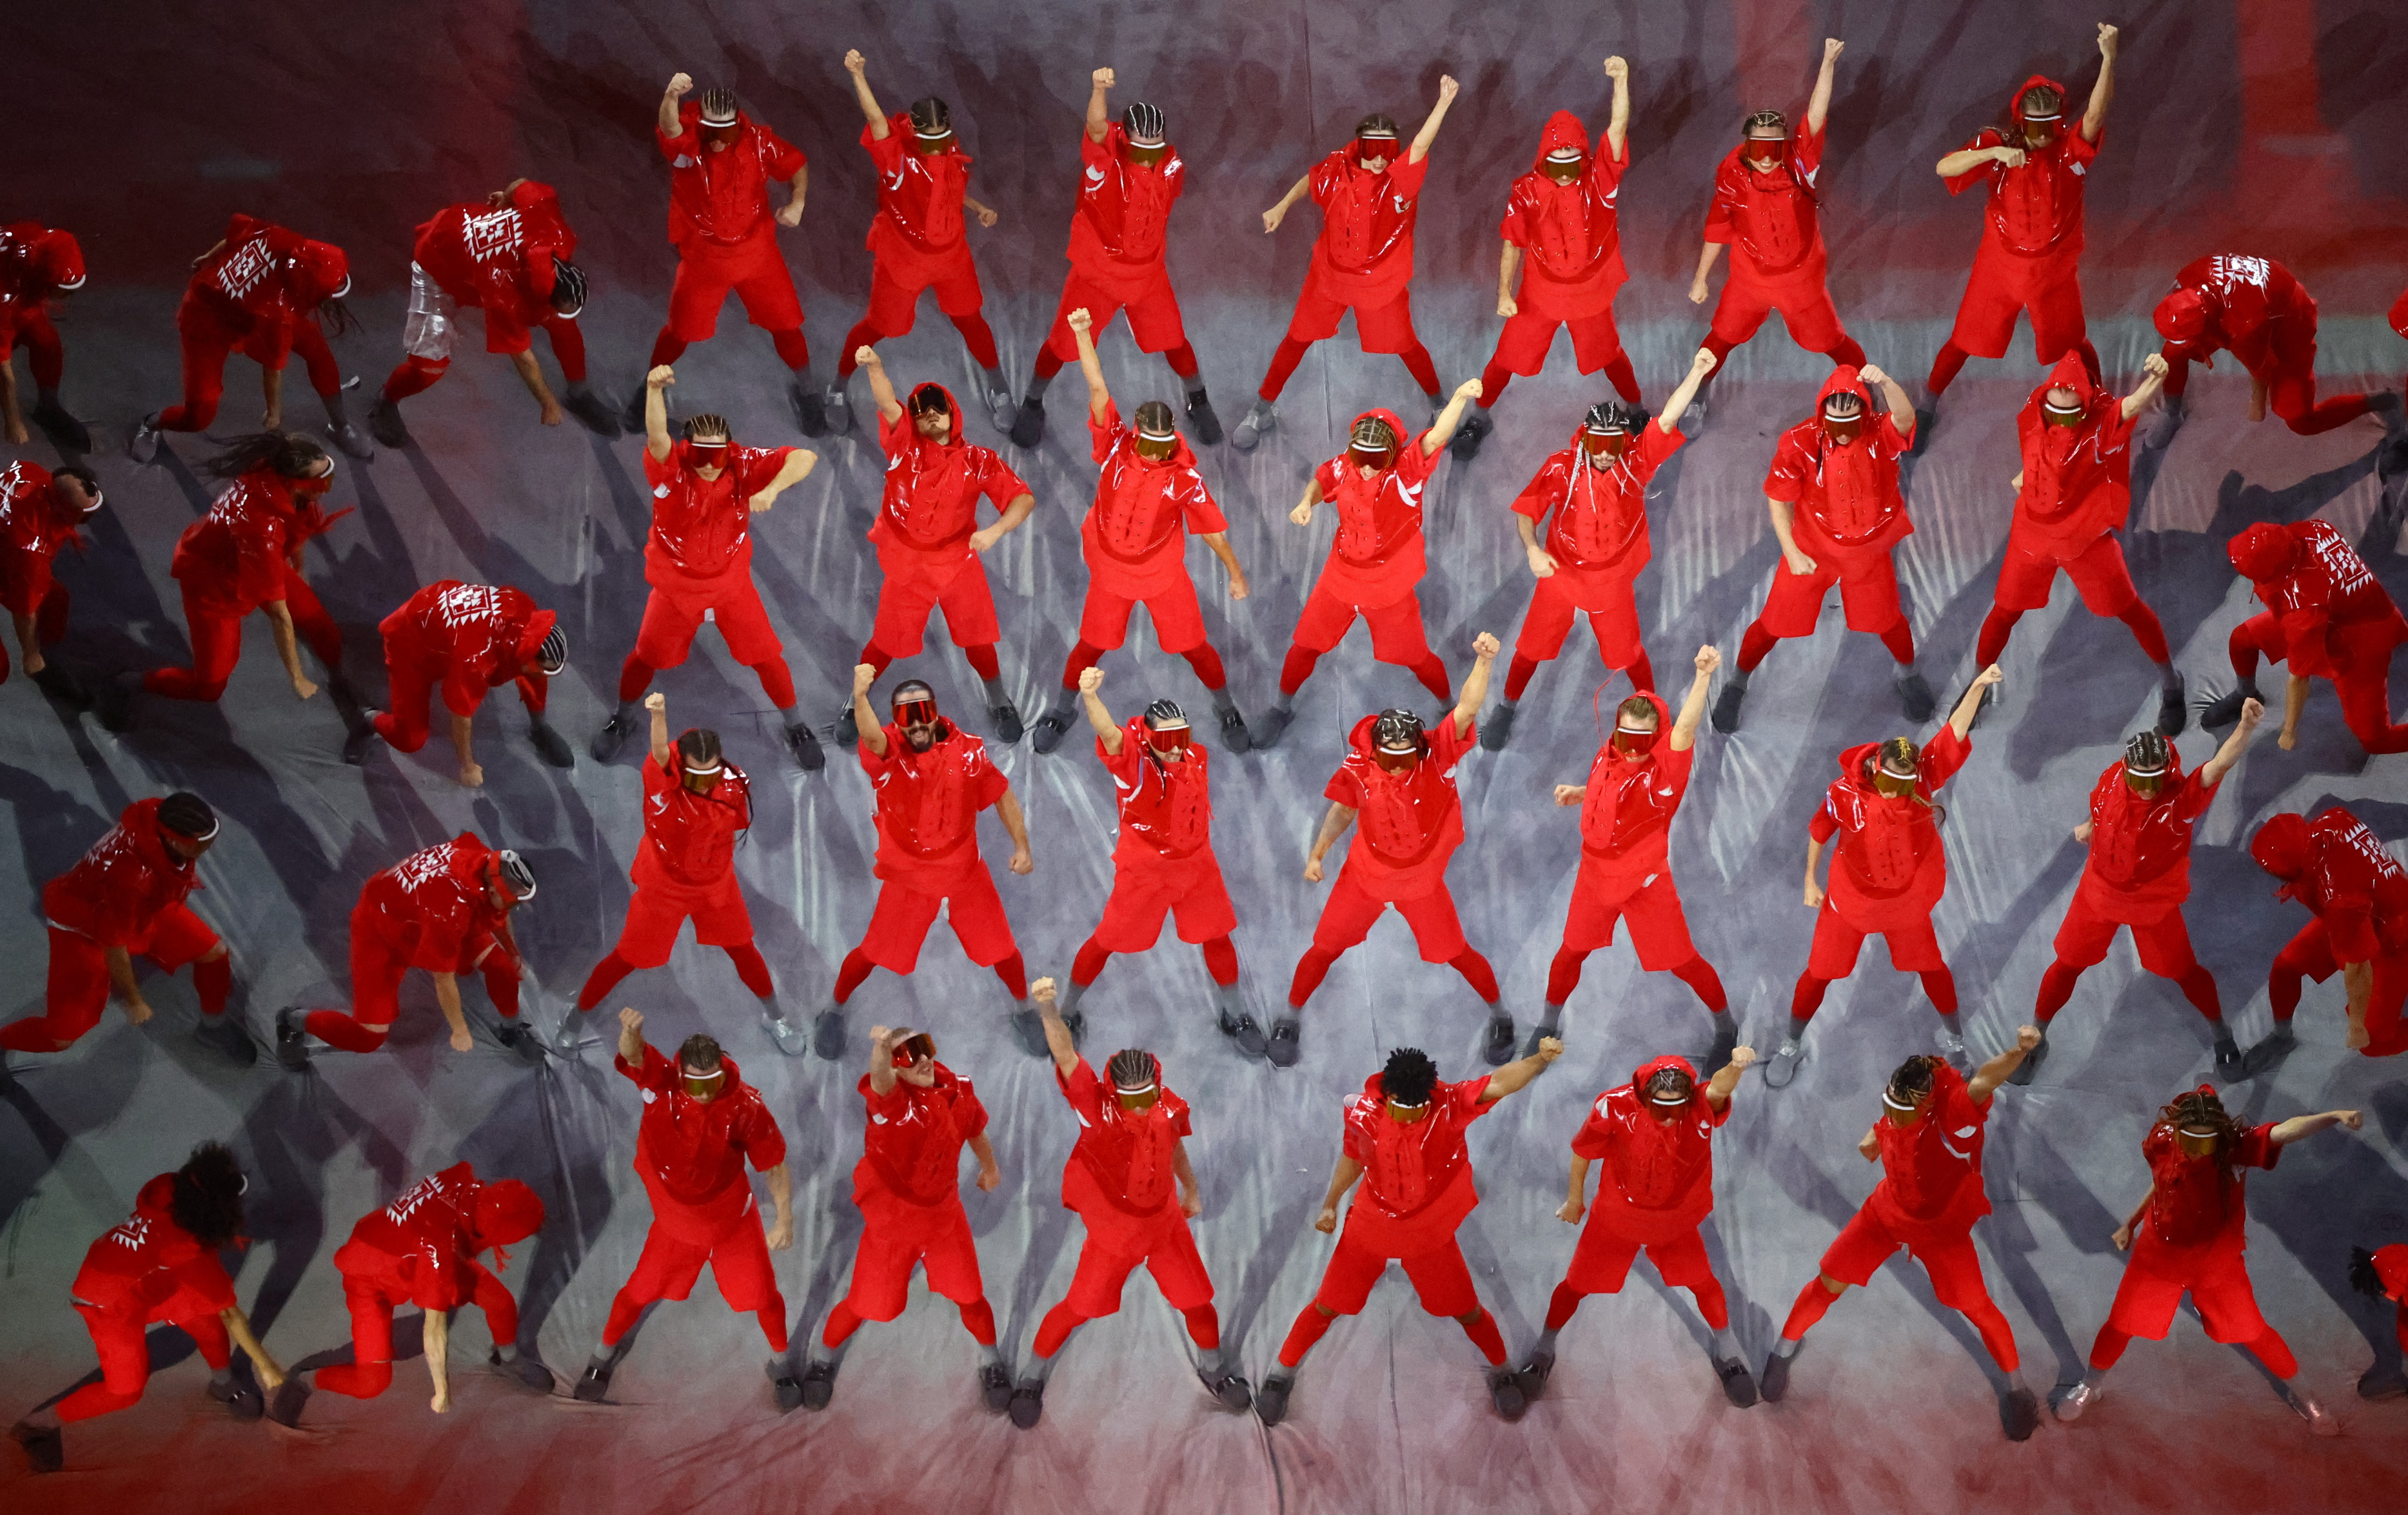 Las diferentes canciones de las Copas del Mundo, con las referencias también con mascotas y logos de los certámenes, contó con artistas en escena vestidos de rojo (REUTERS/Fabrizio Bensch)